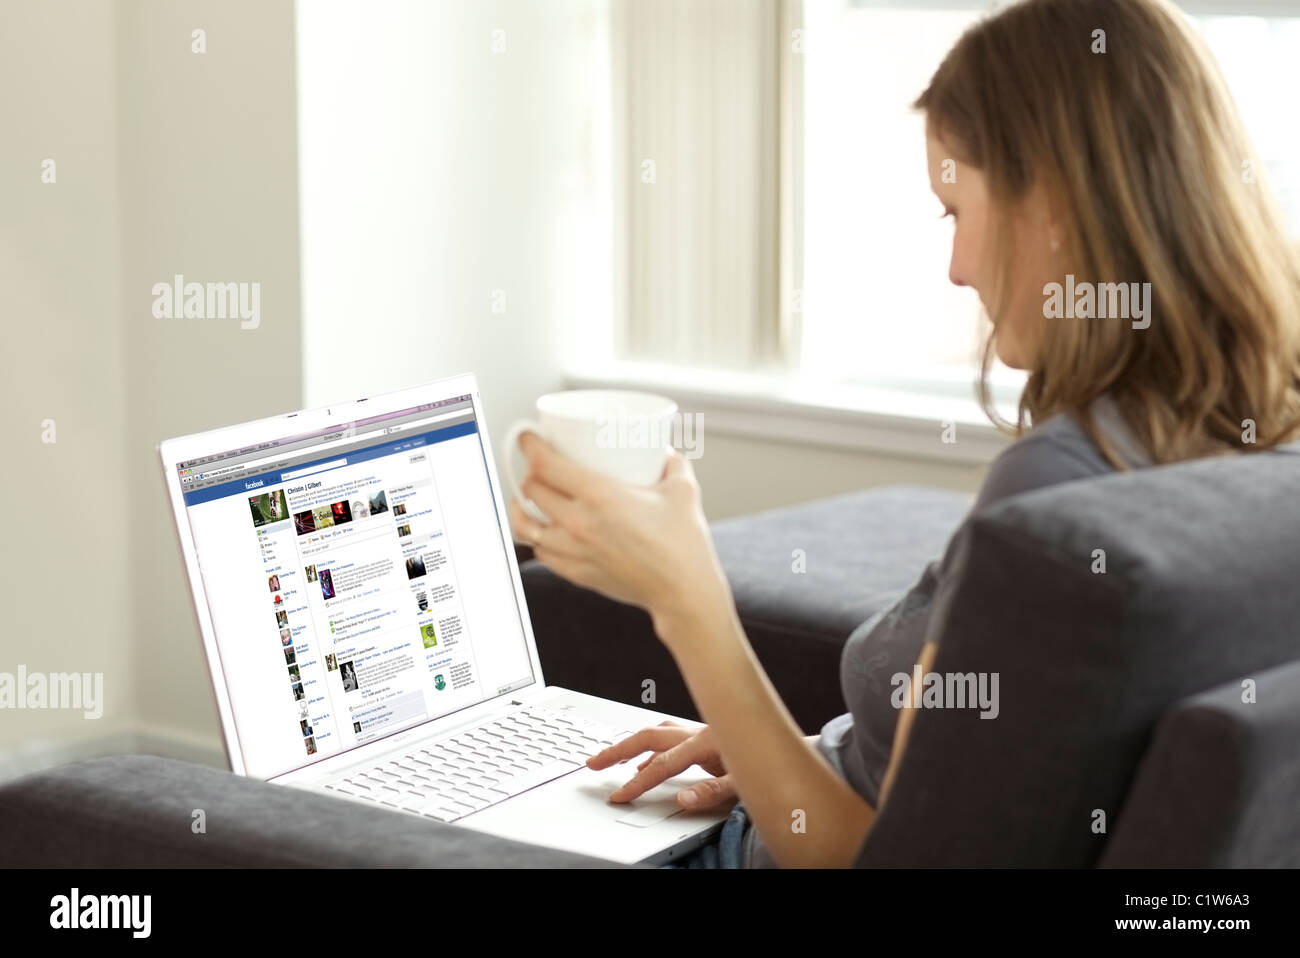 Femme se prélasser dans le salon lors de la vérification de son compte Facebook sur un ordinateur portable Banque D'Images